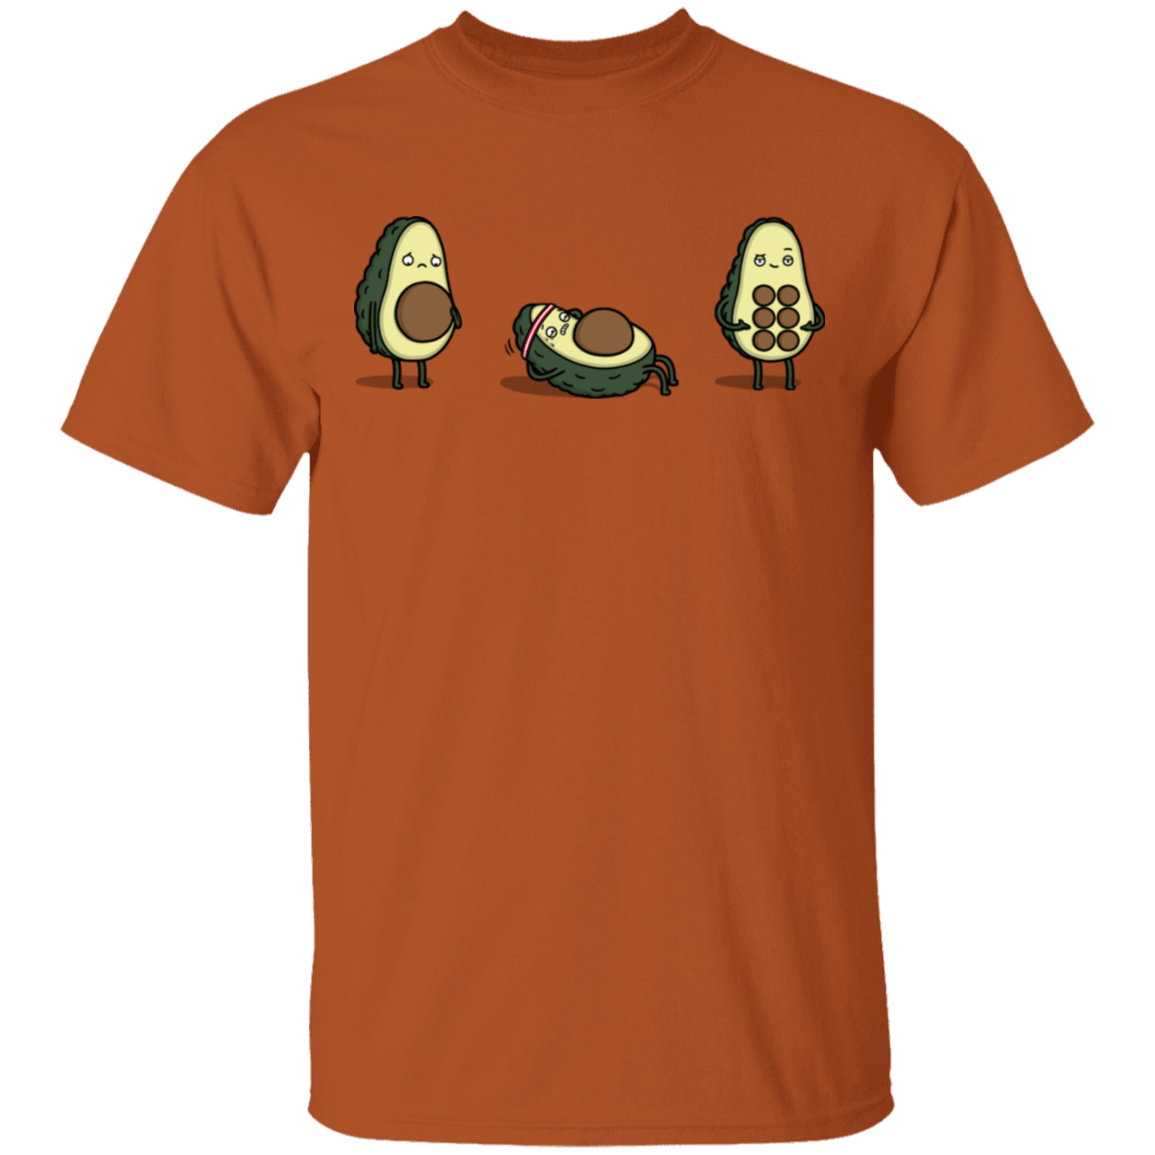 Absvocado T-Shirt